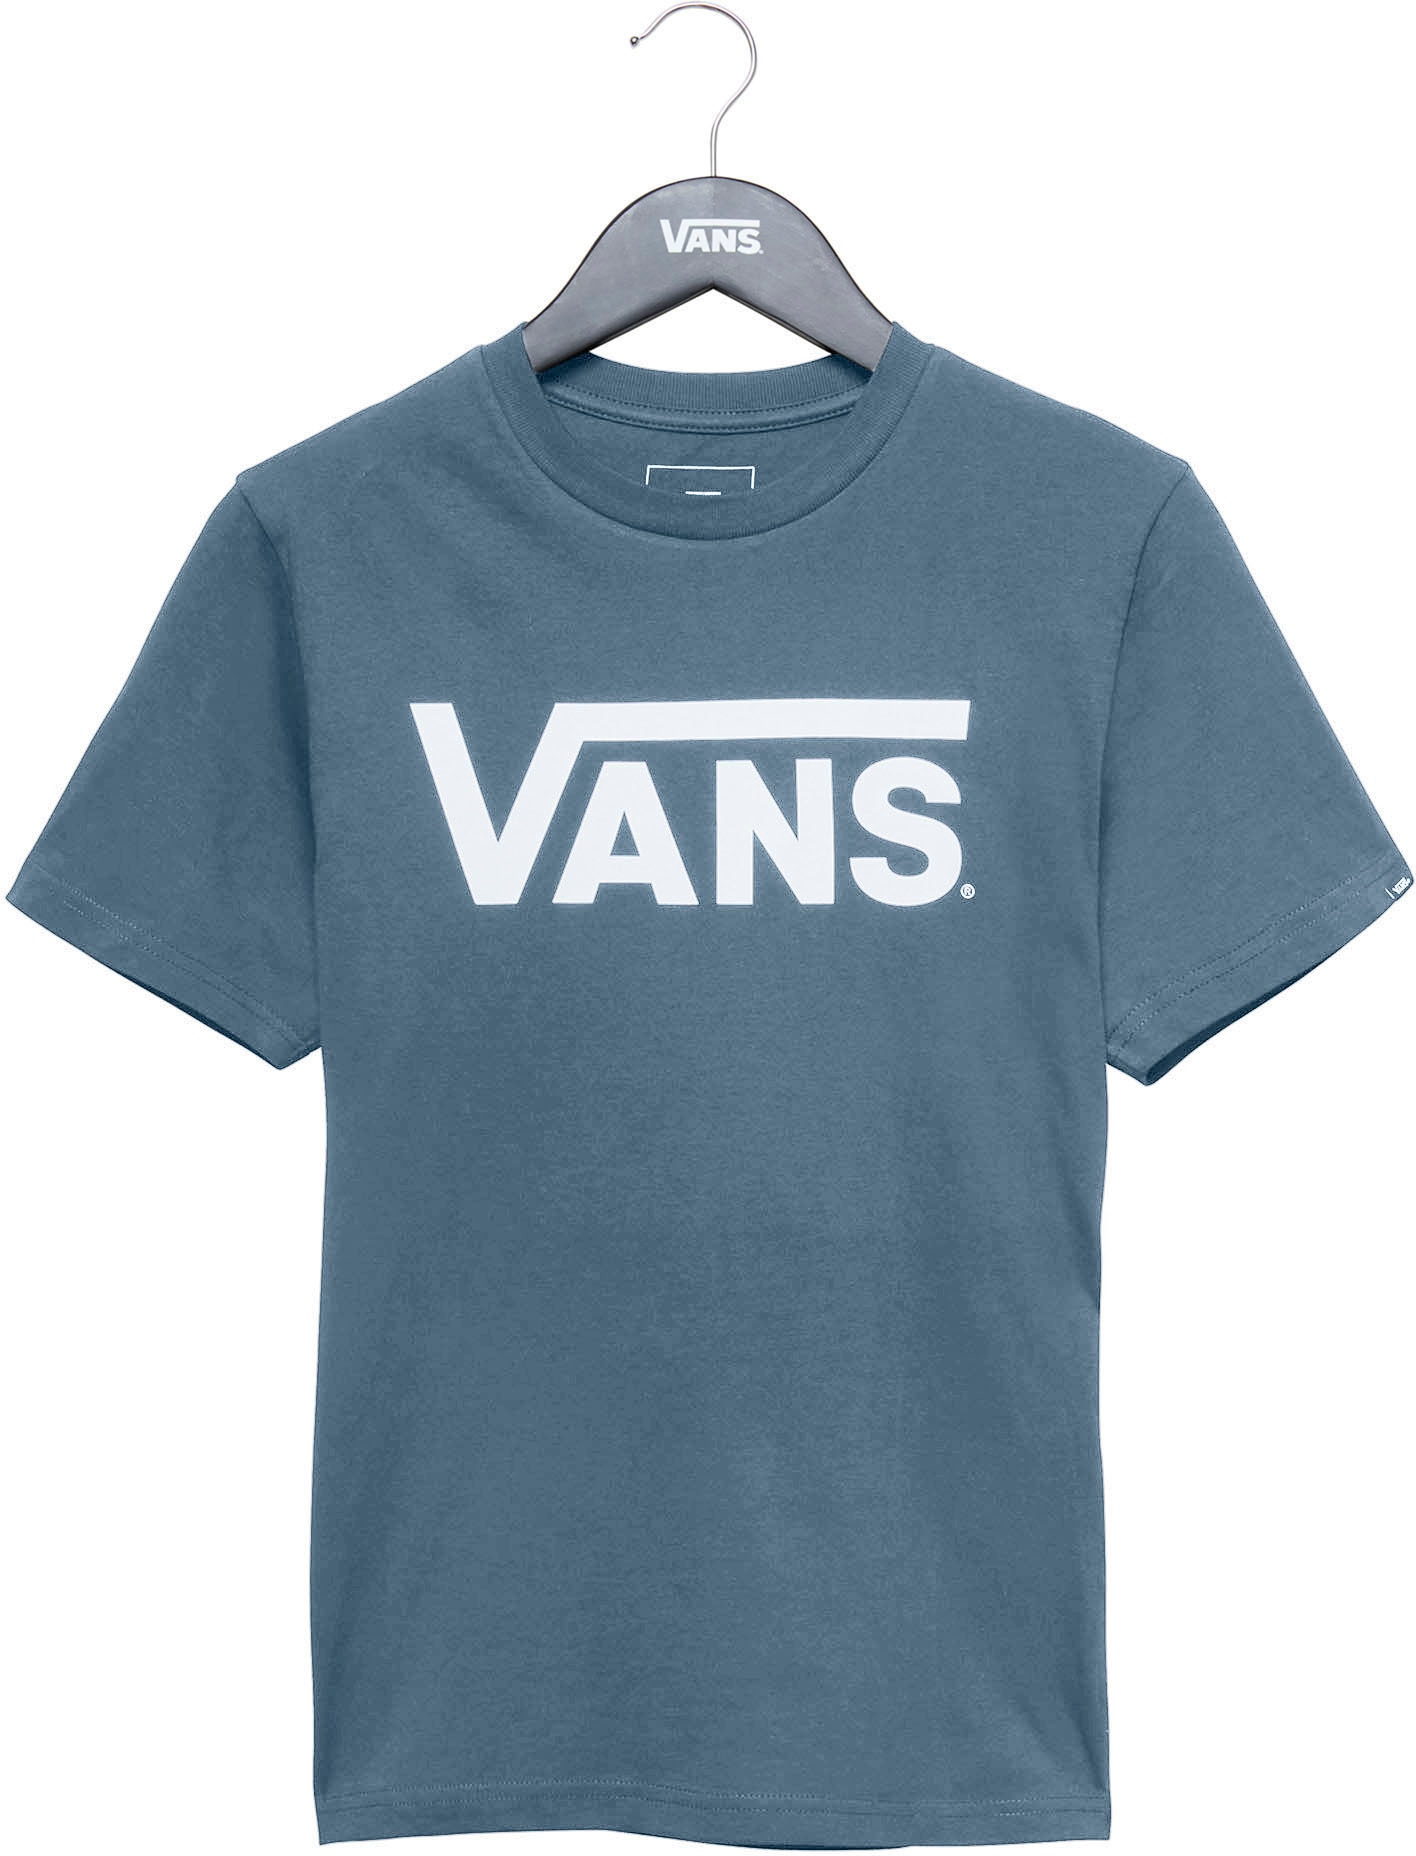 ♕ Vans auf T-Shirt CLASSIC »VANS BOYS« versandkostenfrei